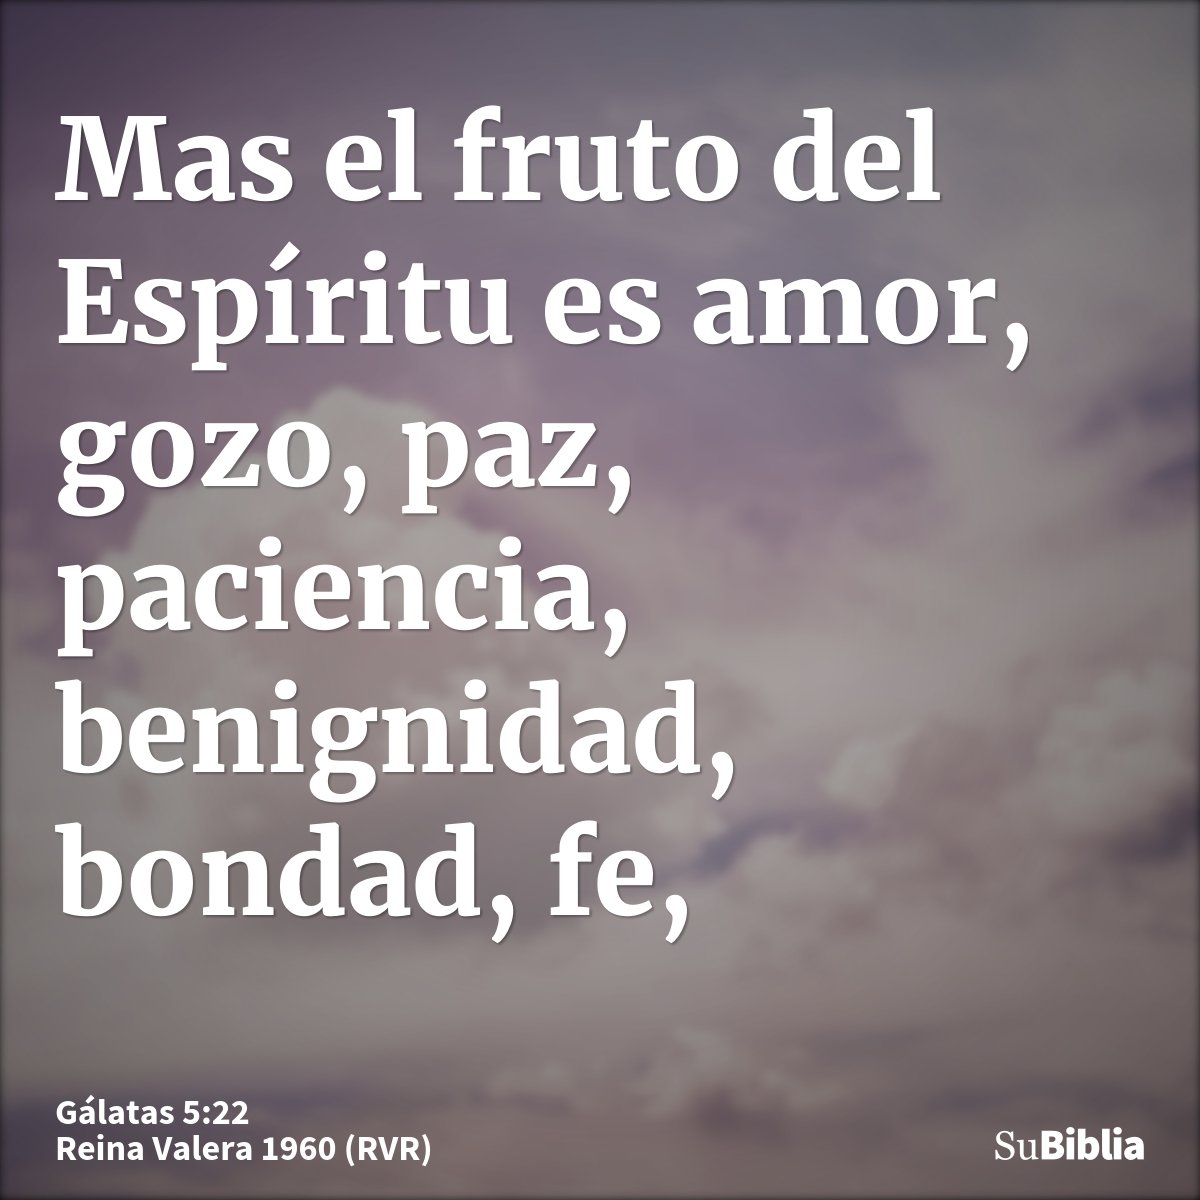 Mas el fruto del Espíritu es amor, gozo, paz, paciencia, benignidad, bondad, fe,